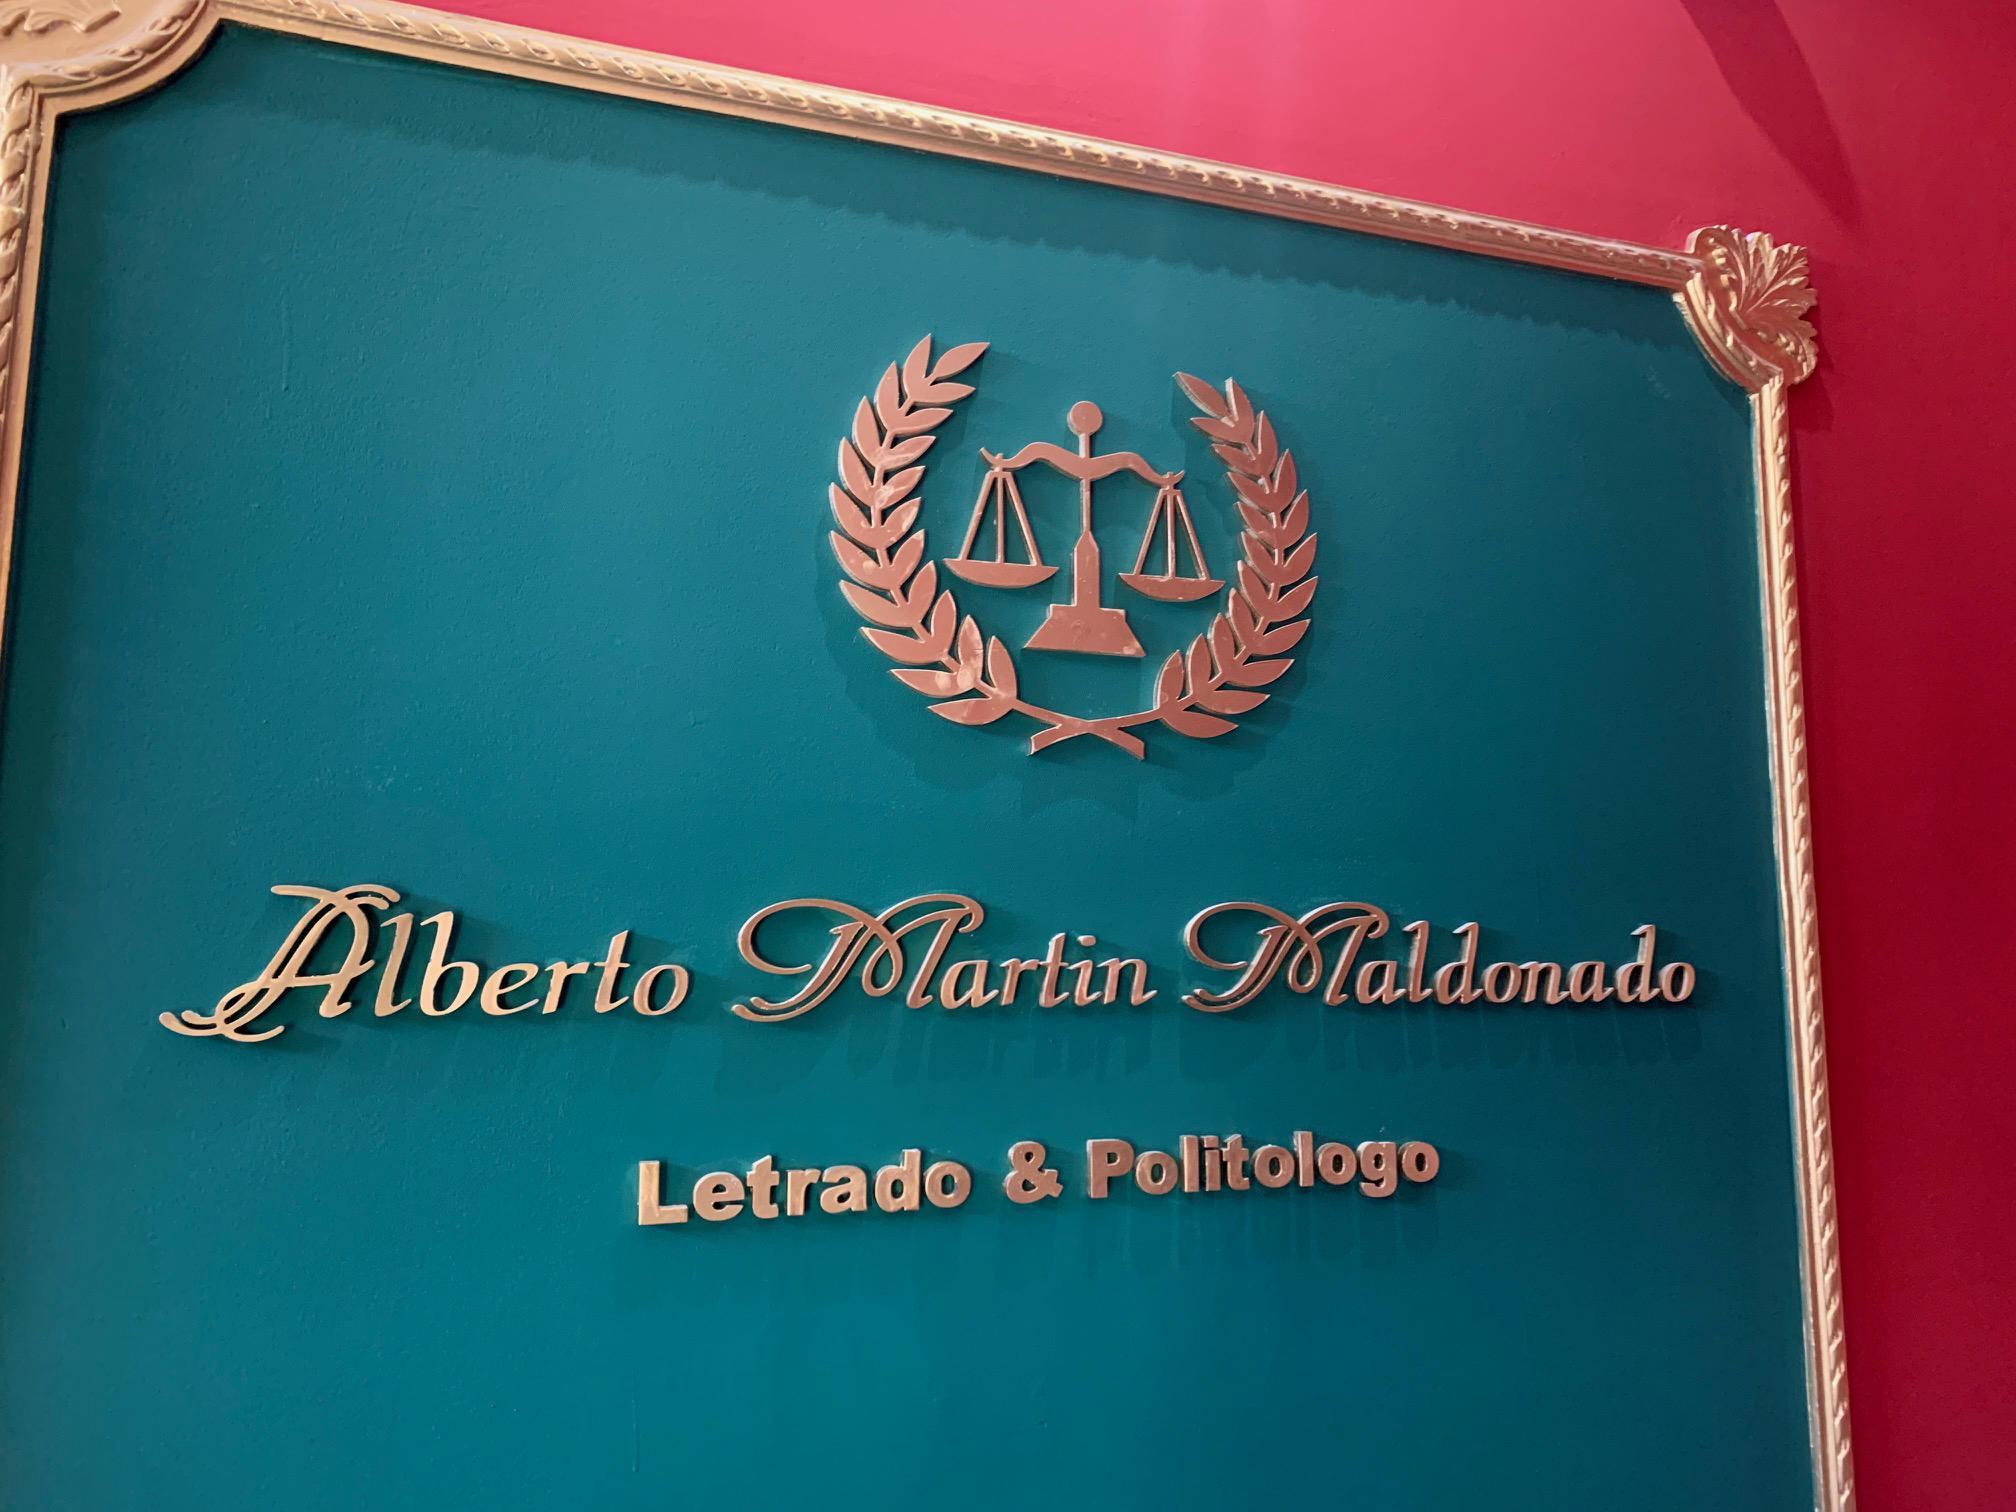 Images Abogados PRO Derecho - Lic. Alberto Martín Maldonado